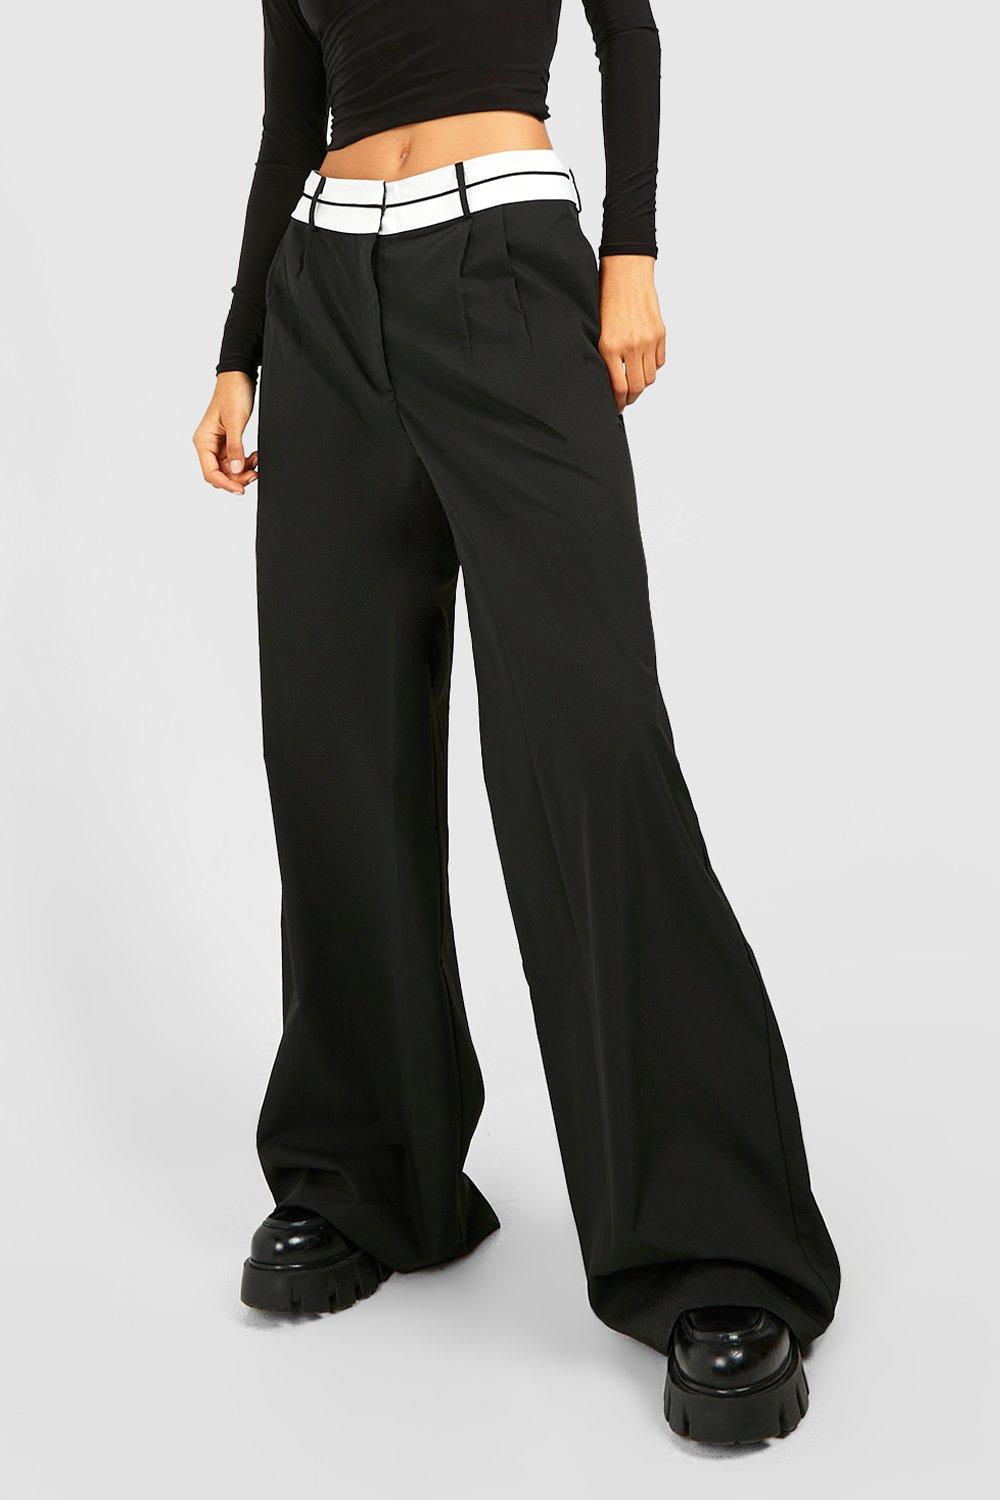 9,750円reverse belt pants ブラックMサイズ